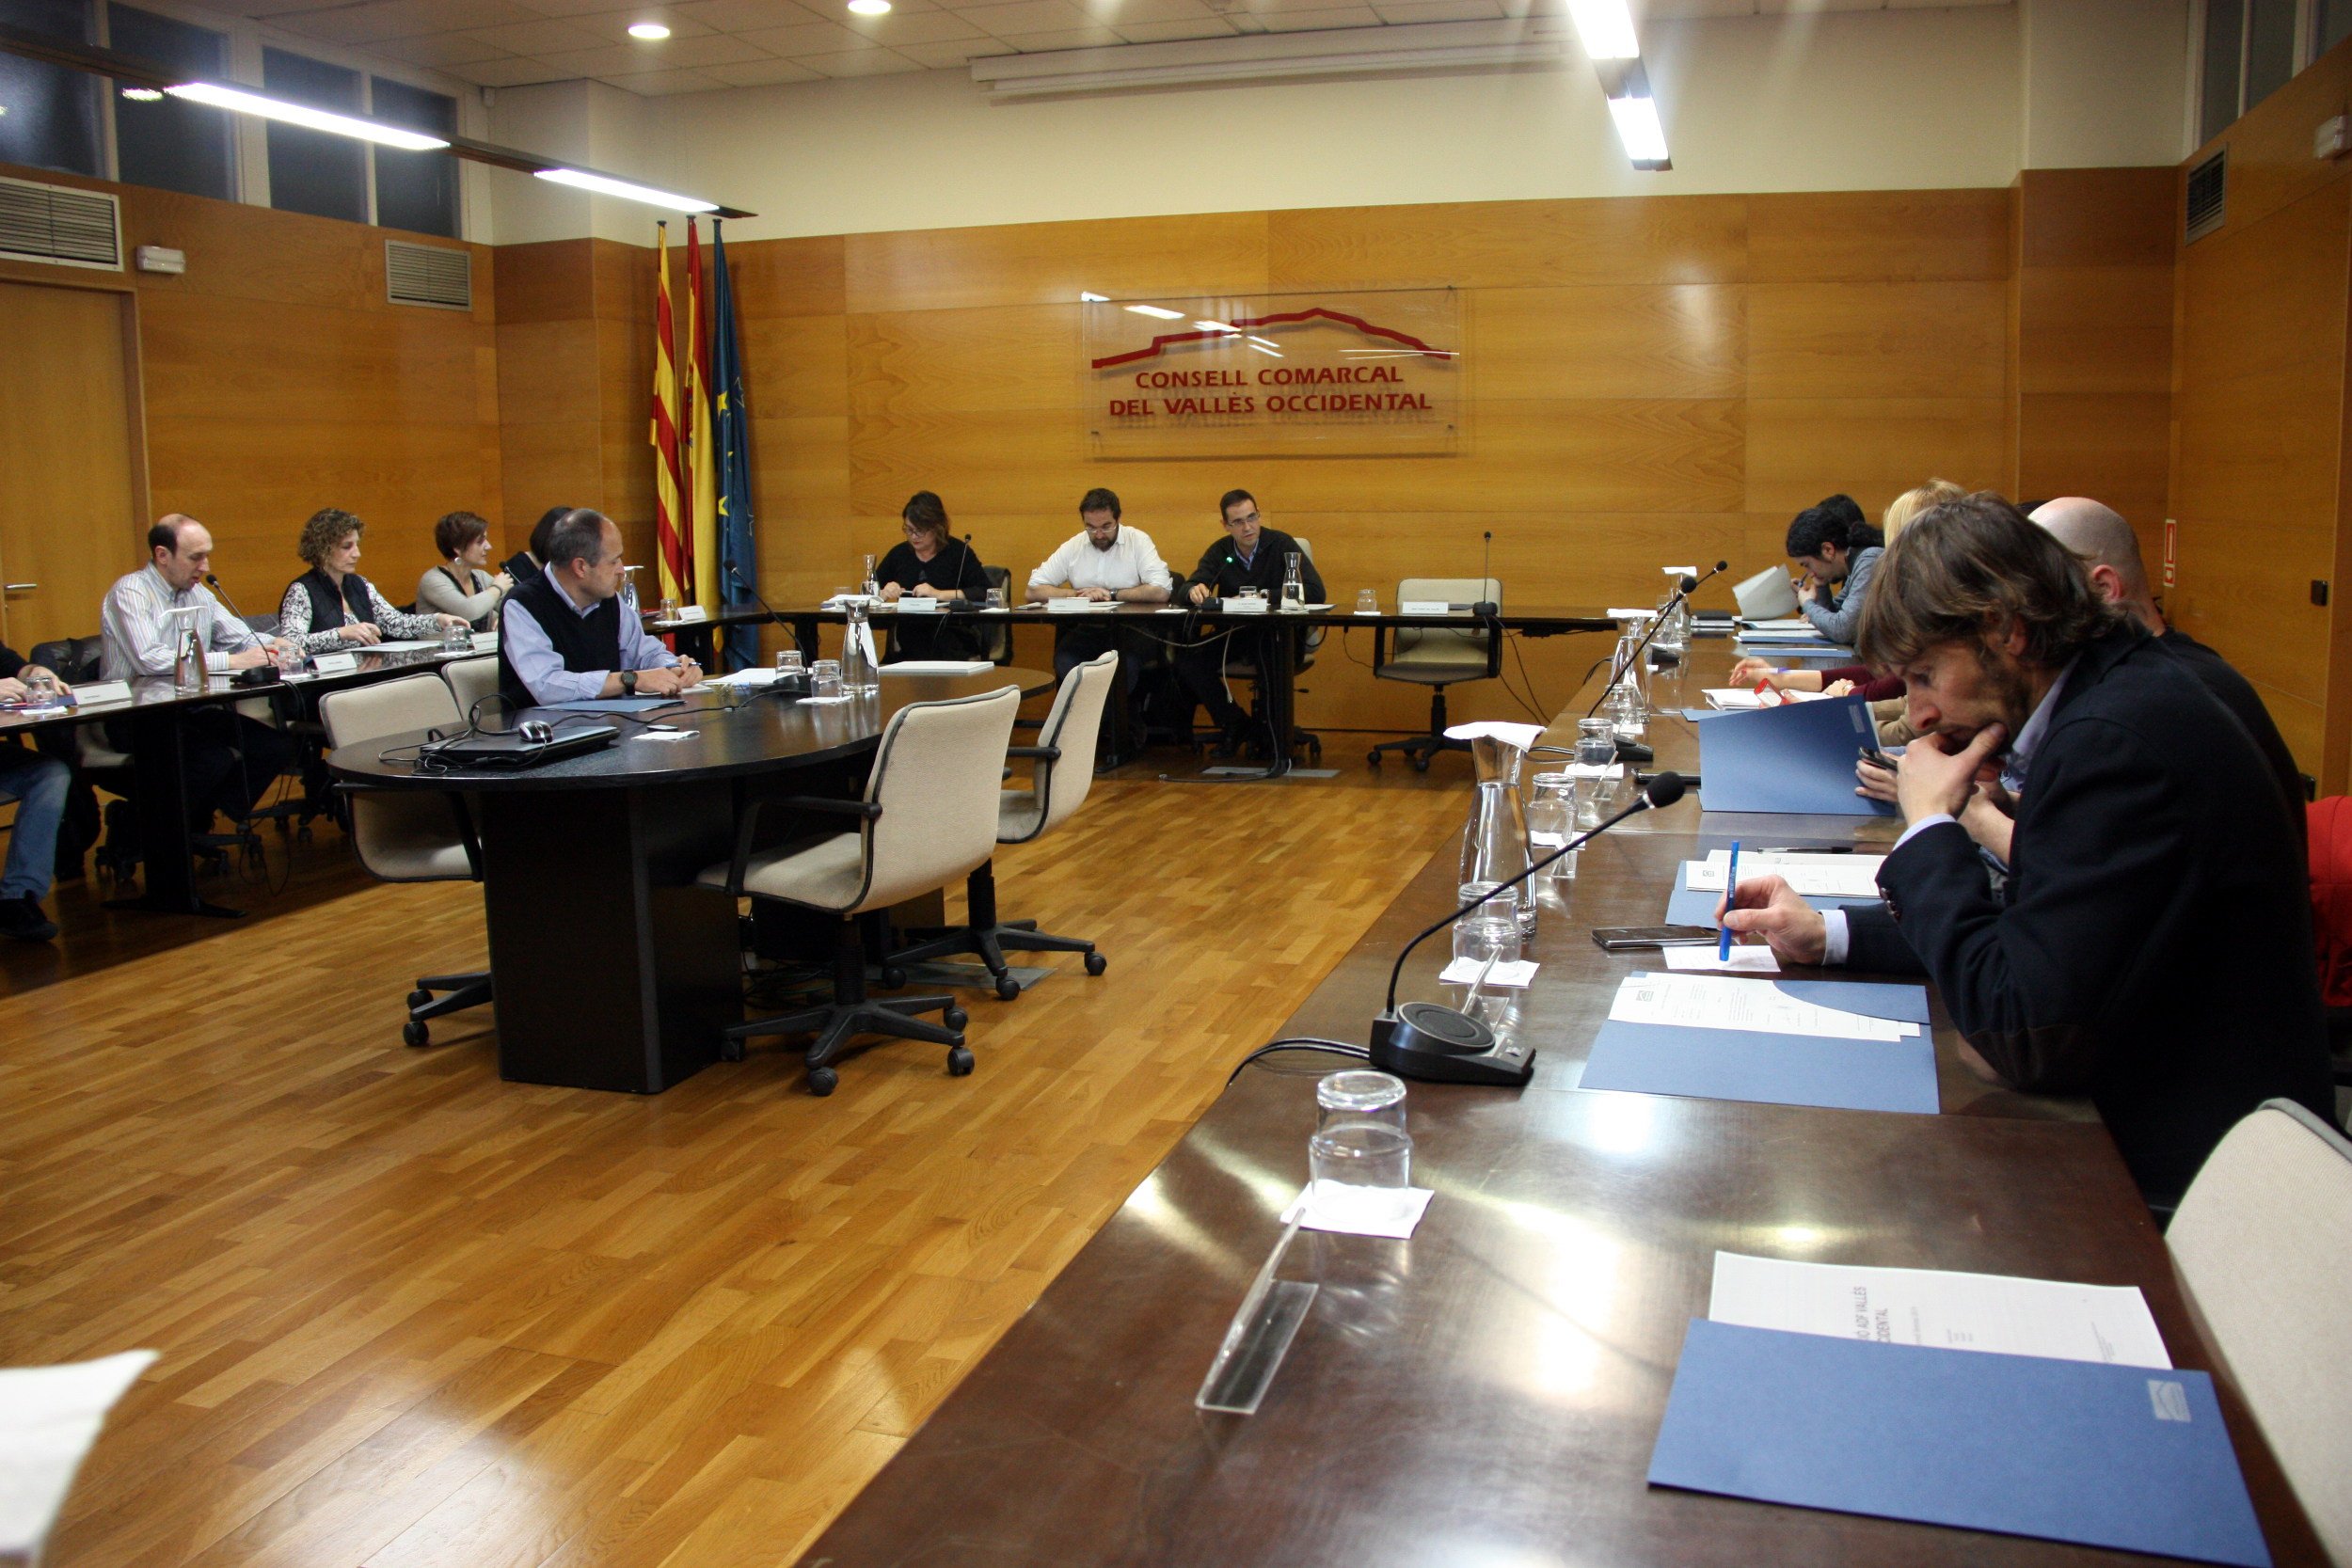 Tripartito de JxCat, el PSC y los comunes en los consejos comarcales de los dos Vallès